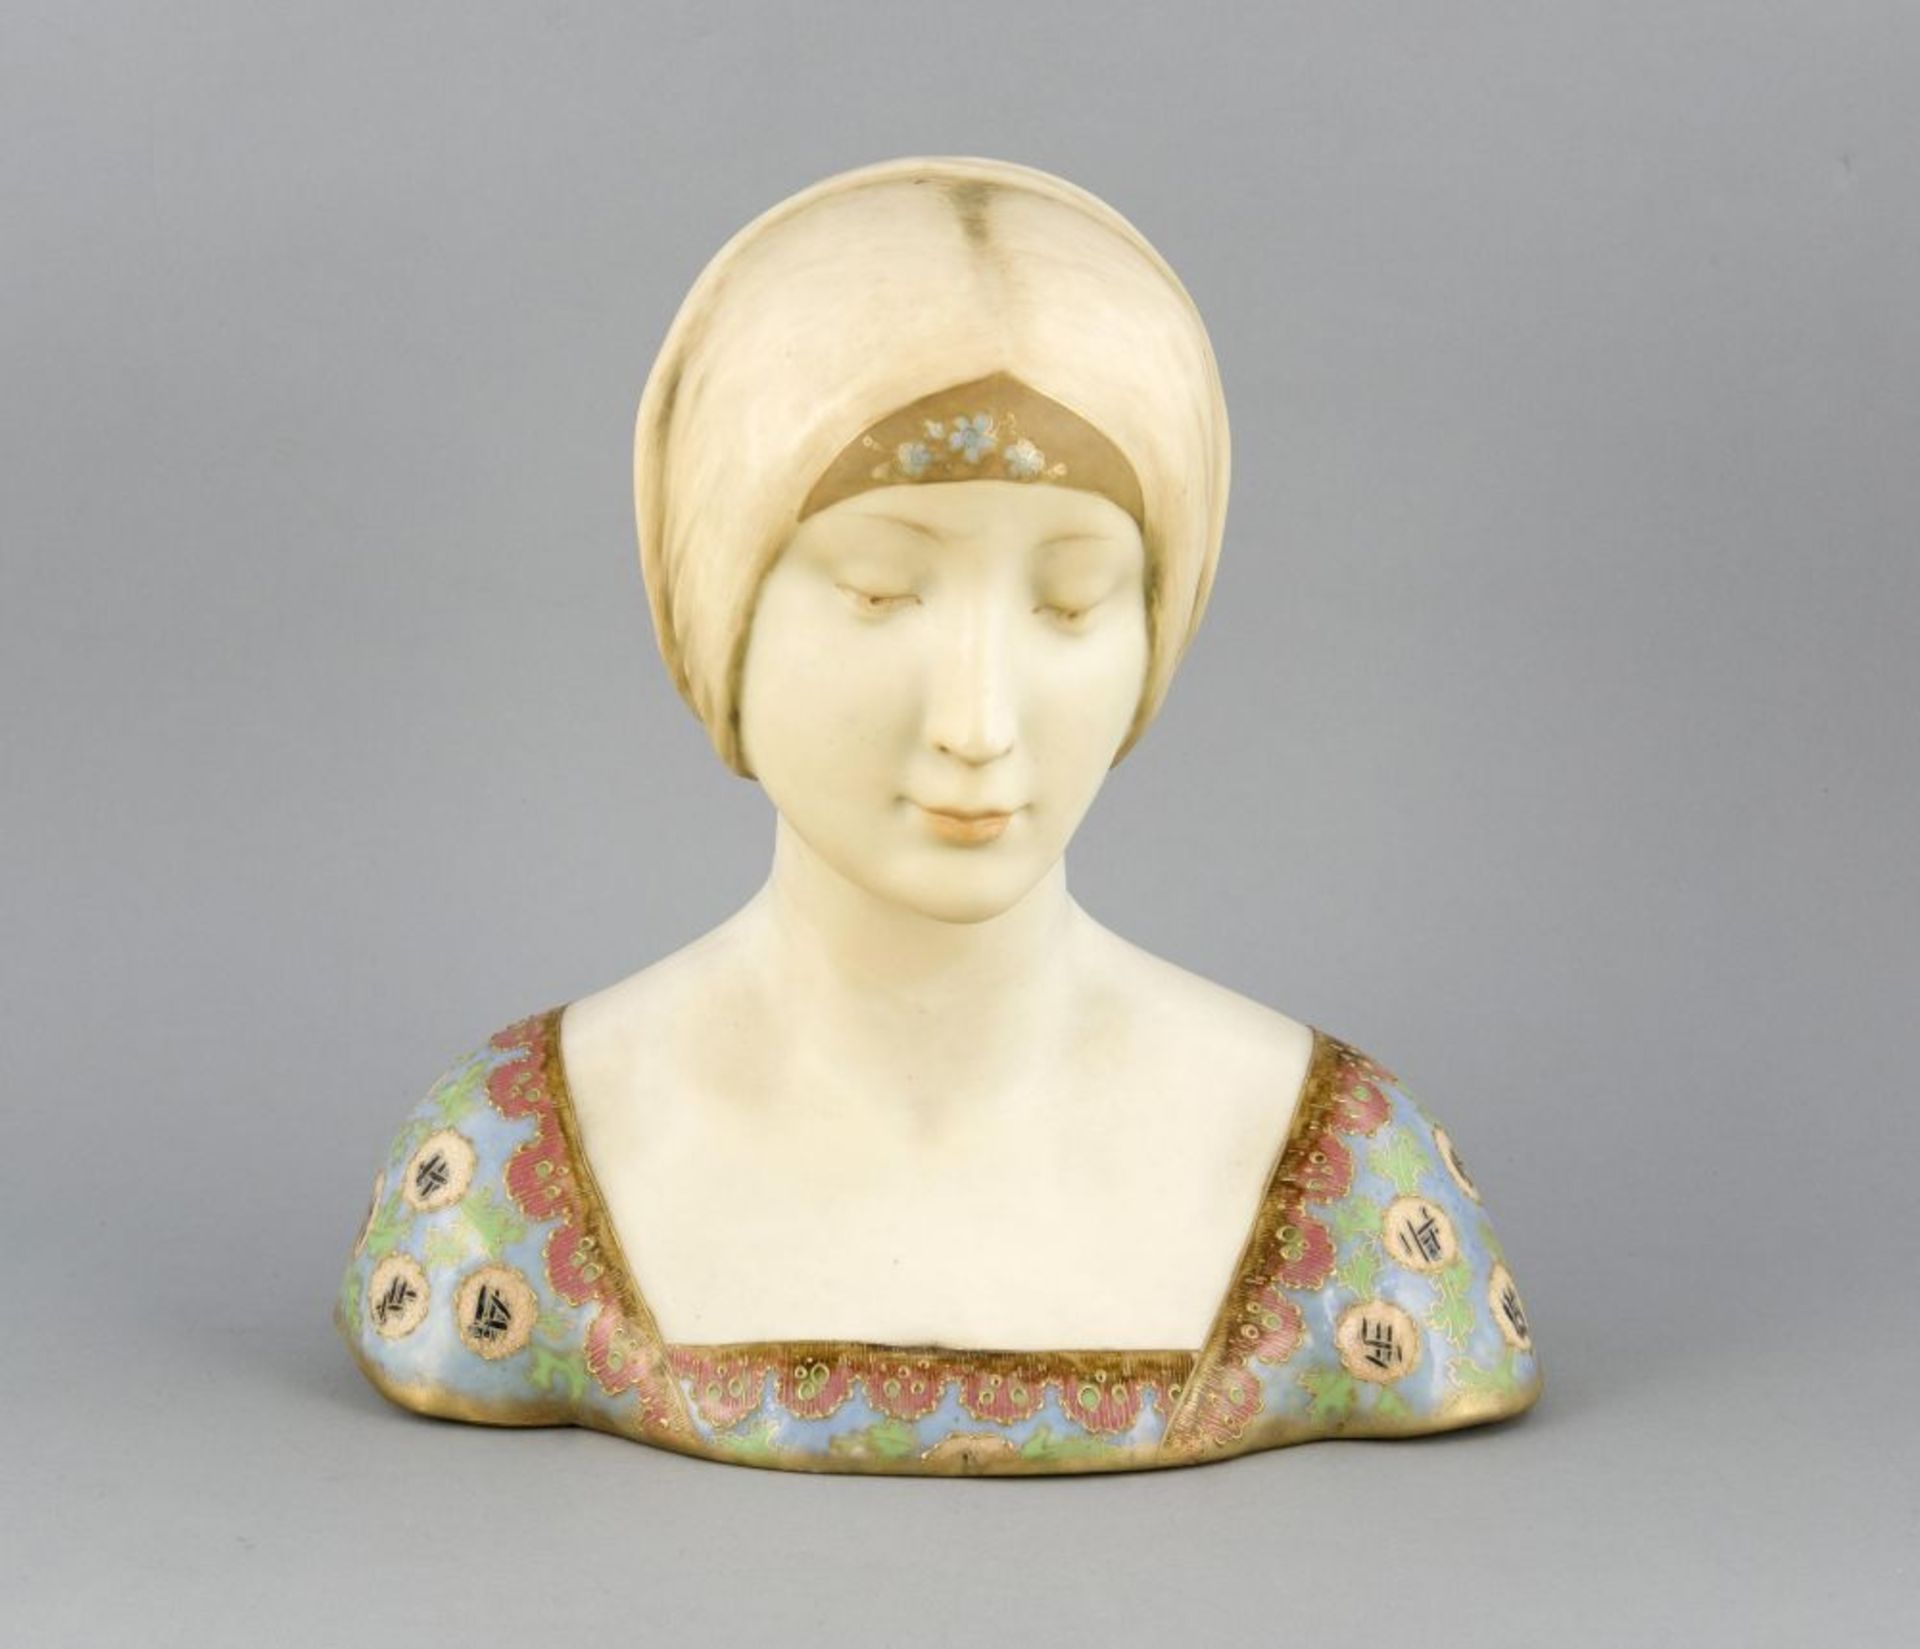 Jugendstil-Büste, Turn bei Teplitz, Böhmen, um 1910-20, junge Frau mit zusammengebundenen Haaren,